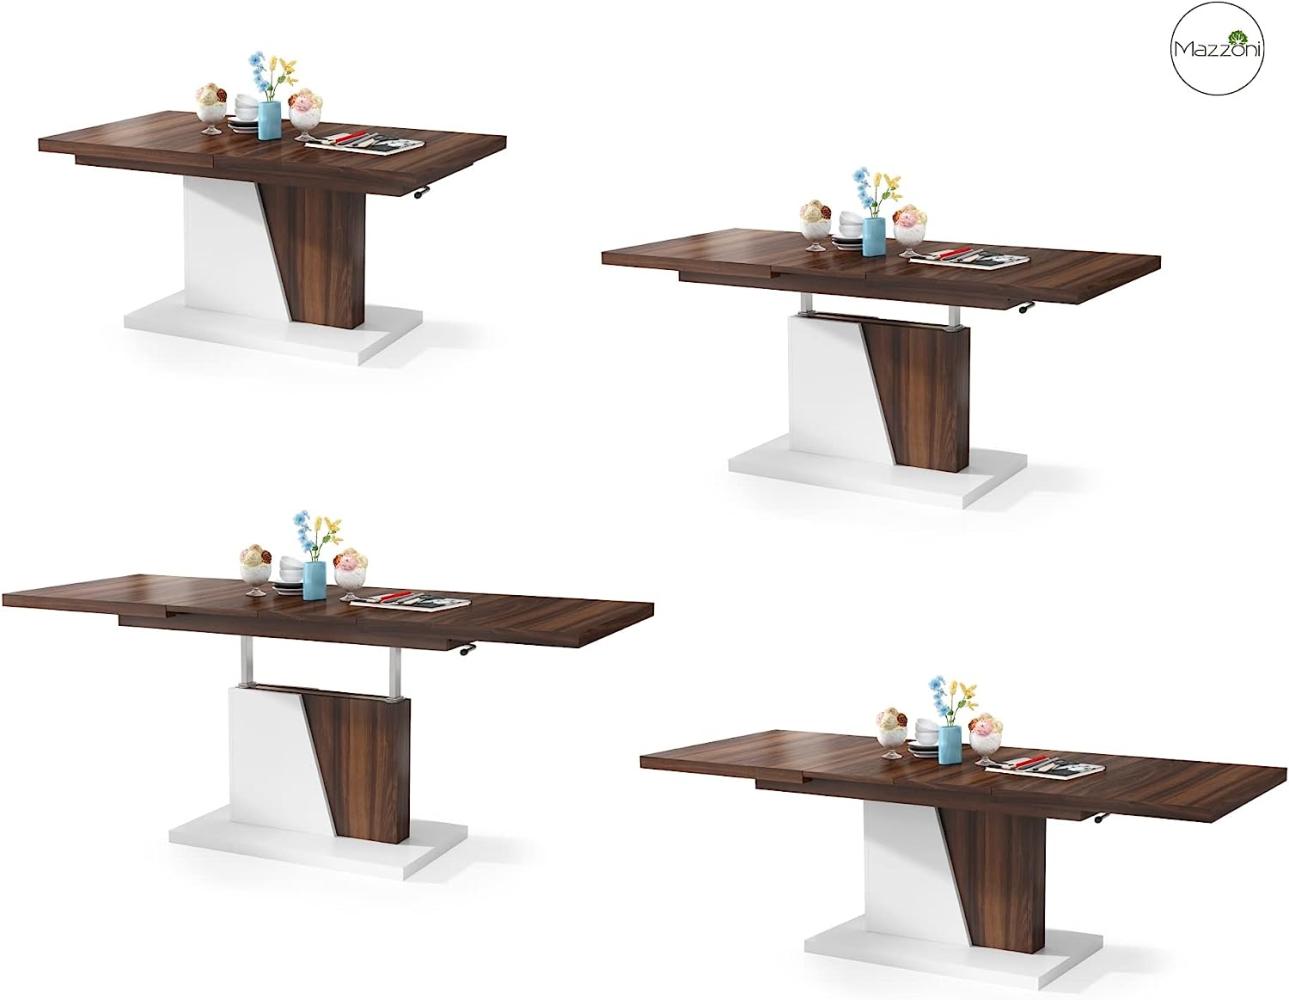 Mazzoni Design Couchtisch Tisch Grand Noir stufenlos höhenverstellbar ausziehbar 120 bis 180cm Esstisch (Nussbaum/Weiß matt) Bild 1